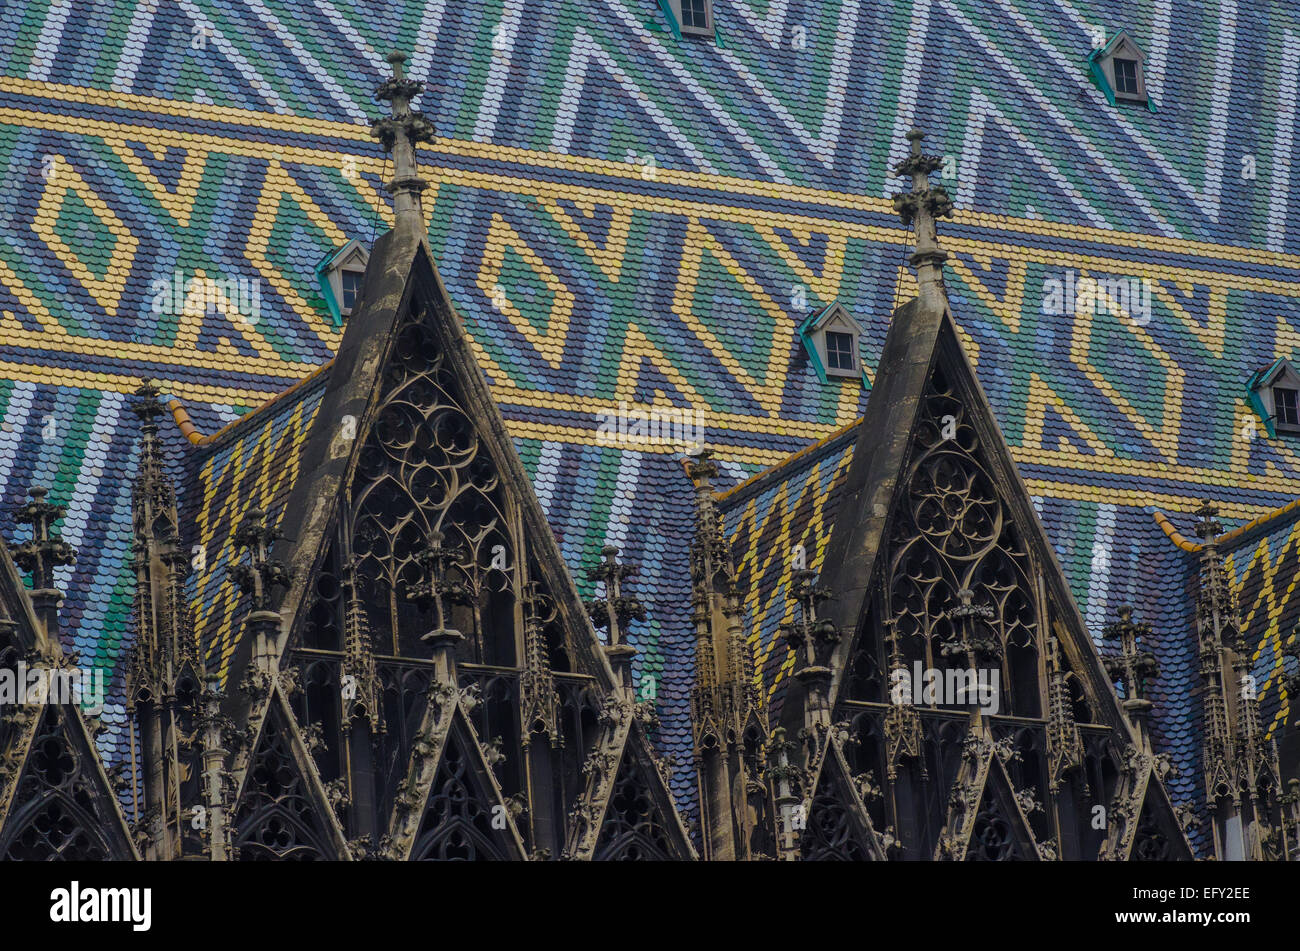 La histórica catedral de San Esteban en Viena, Austria es famosa por sus colores y patrones de la azotea deslumbrante. Foto de stock